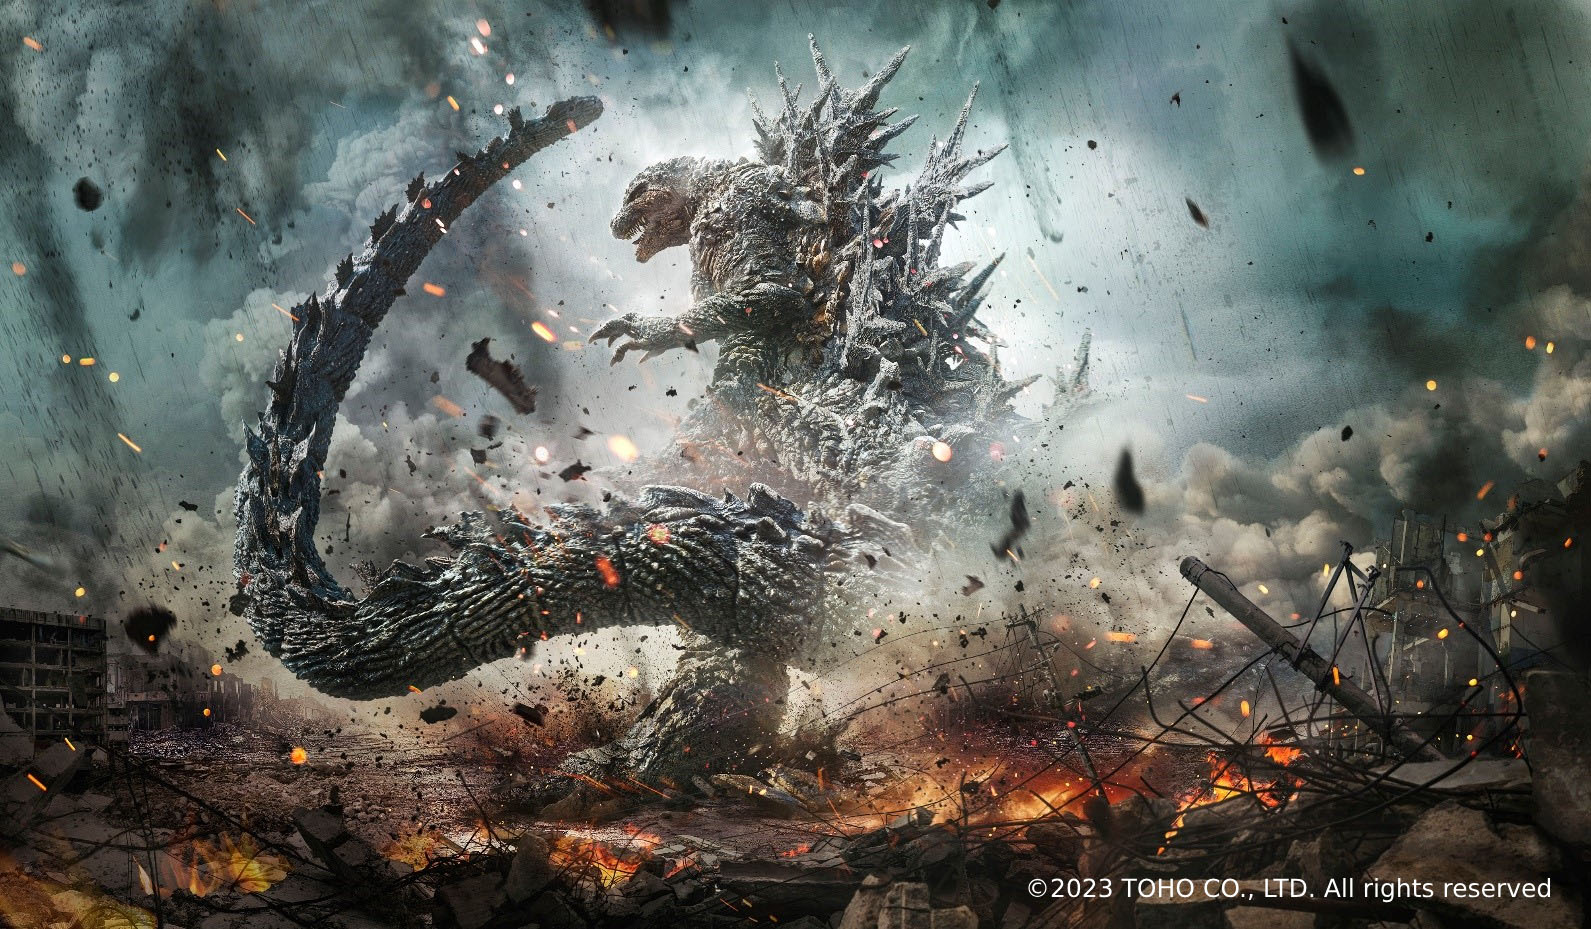 Godzilla Minus One trionfa agli Oscar: il Giappone conquista la statuetta per i migliori effetti visivi!